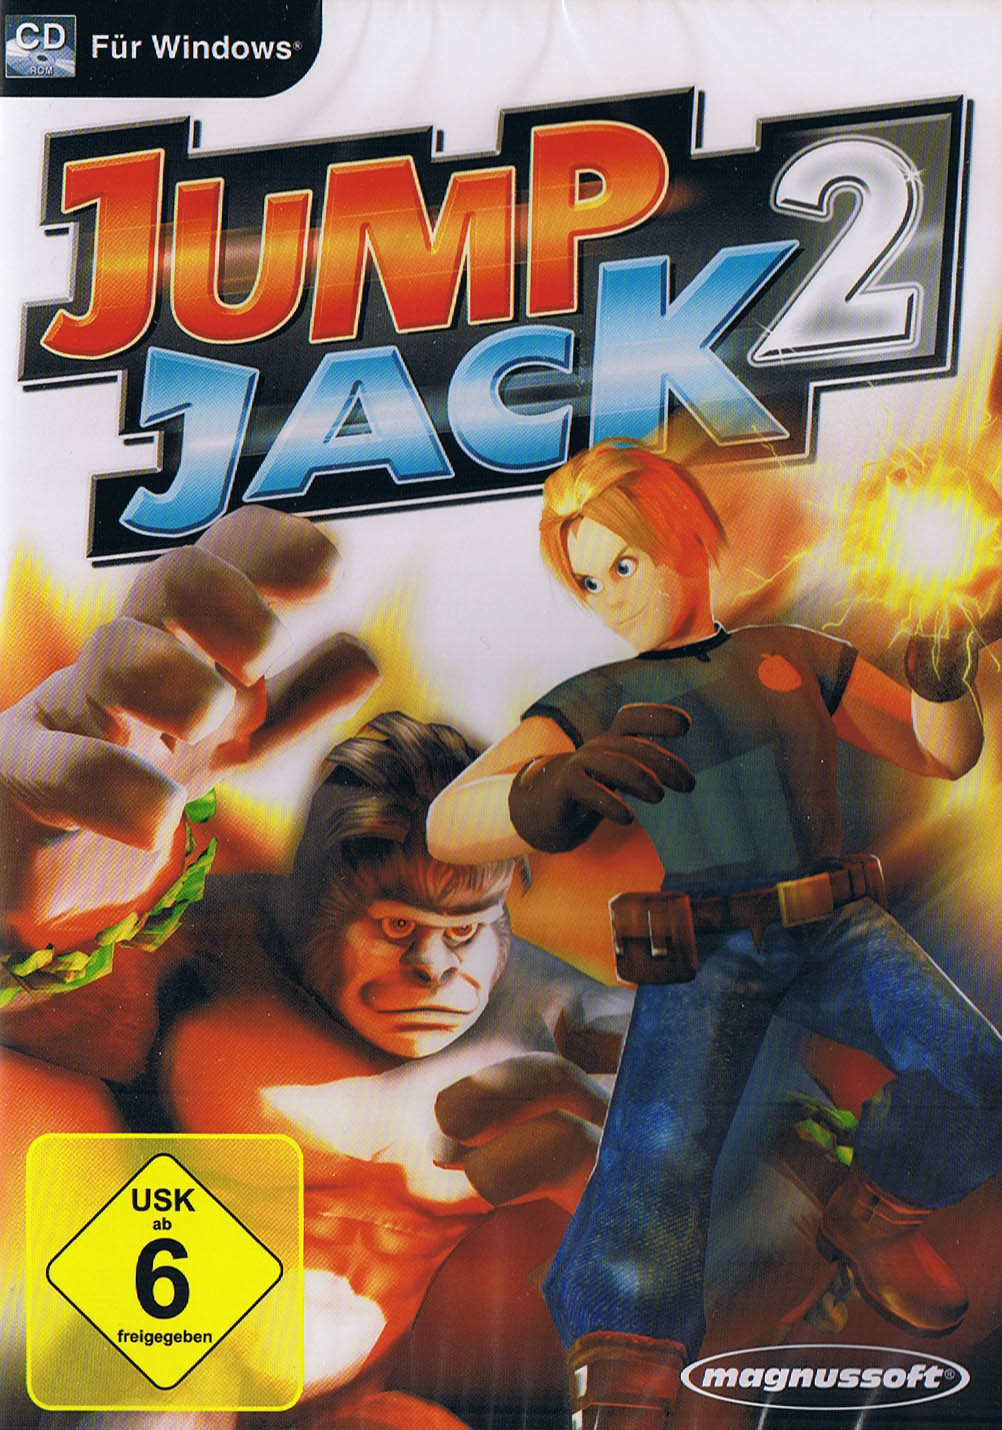 Game jack 2. Jacked игра. Jack 2 игра. Jumping Jack игра. Игра Джек 2010.